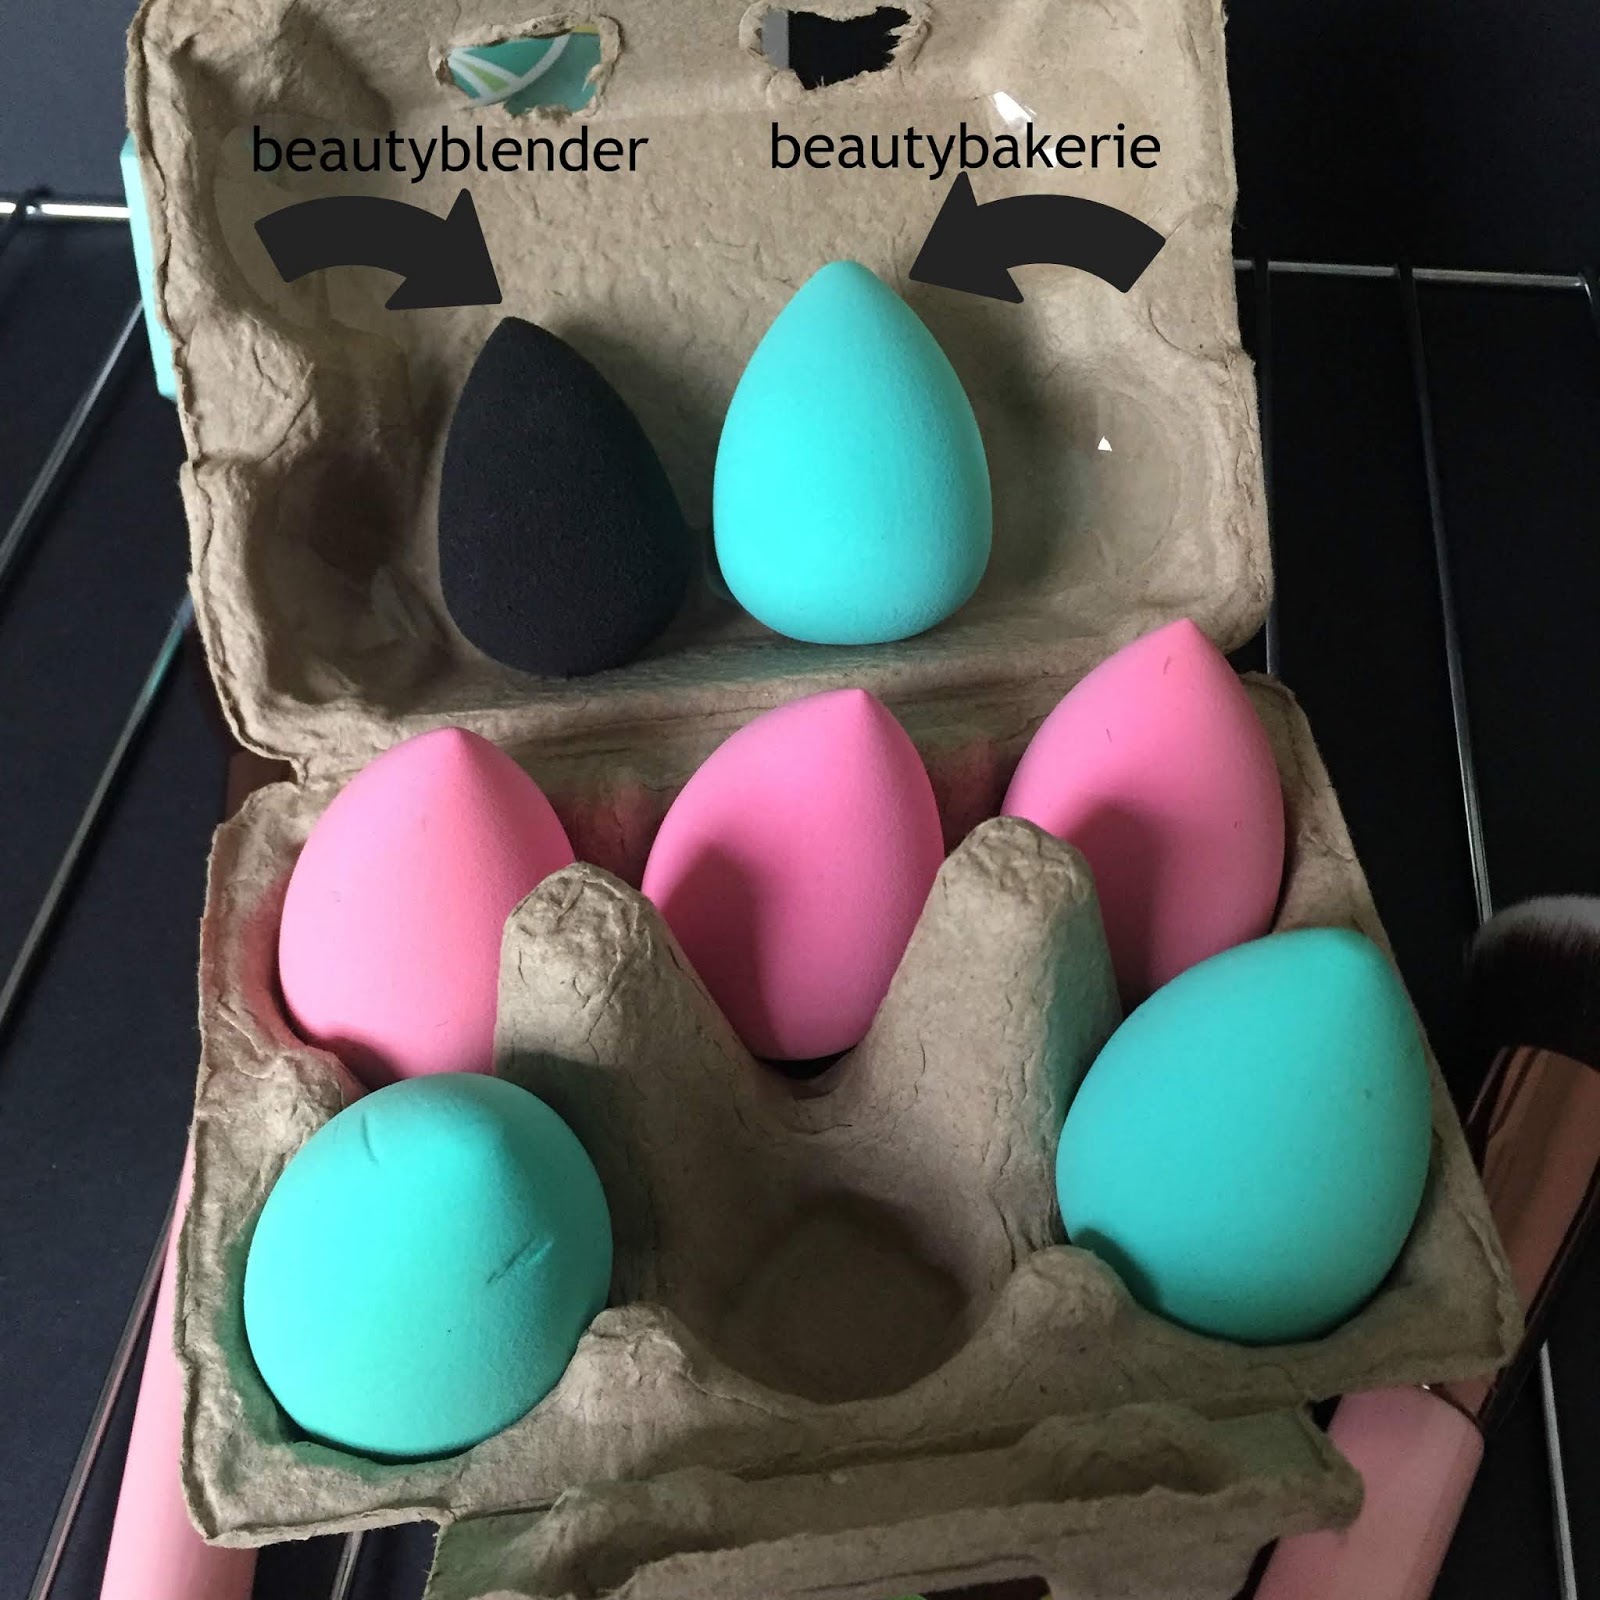 Beauty Bakerie Blending Egg Beauty Sponges